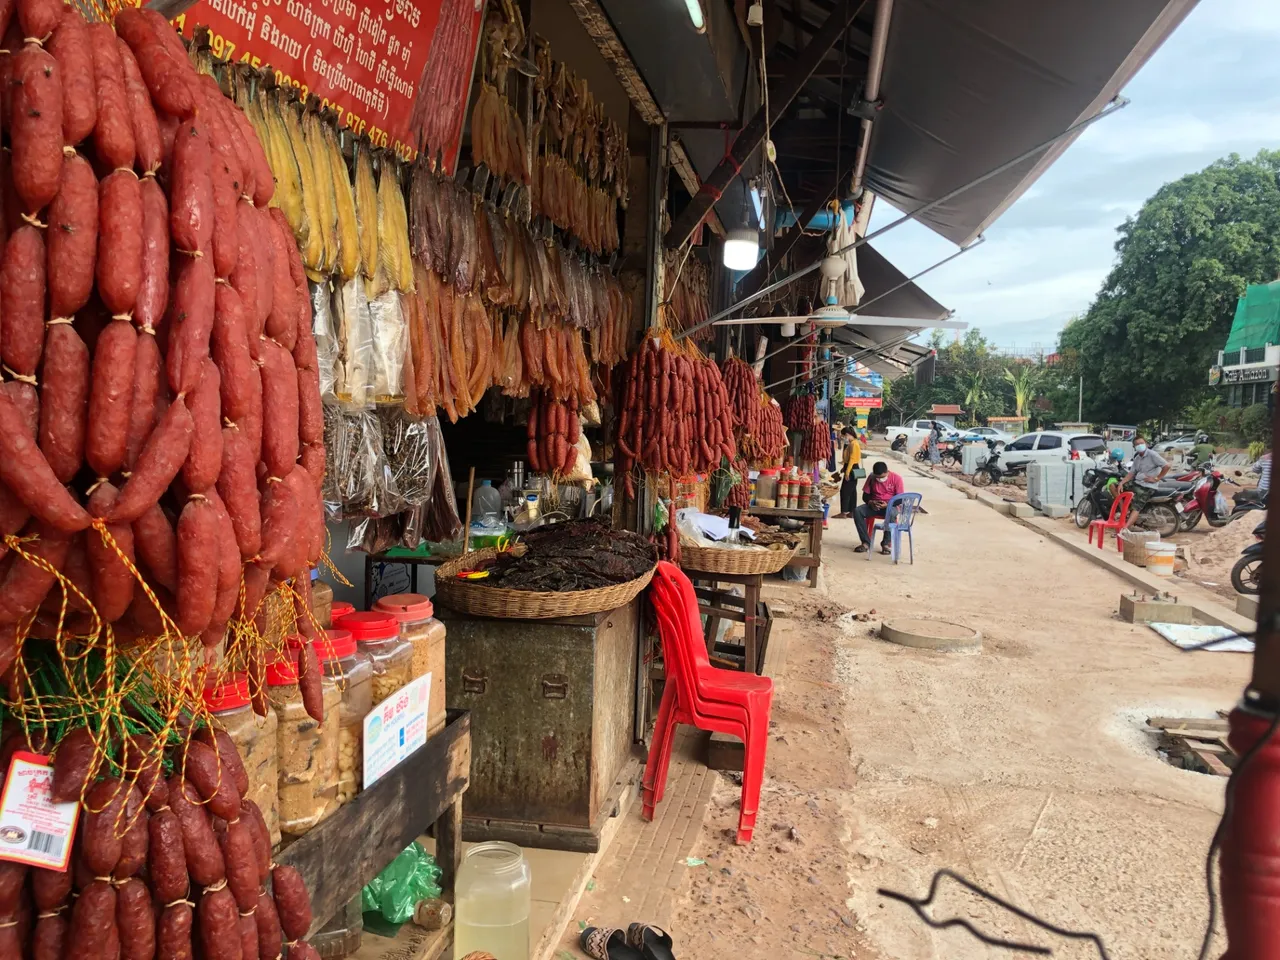 The Sausage King of Siem Reap